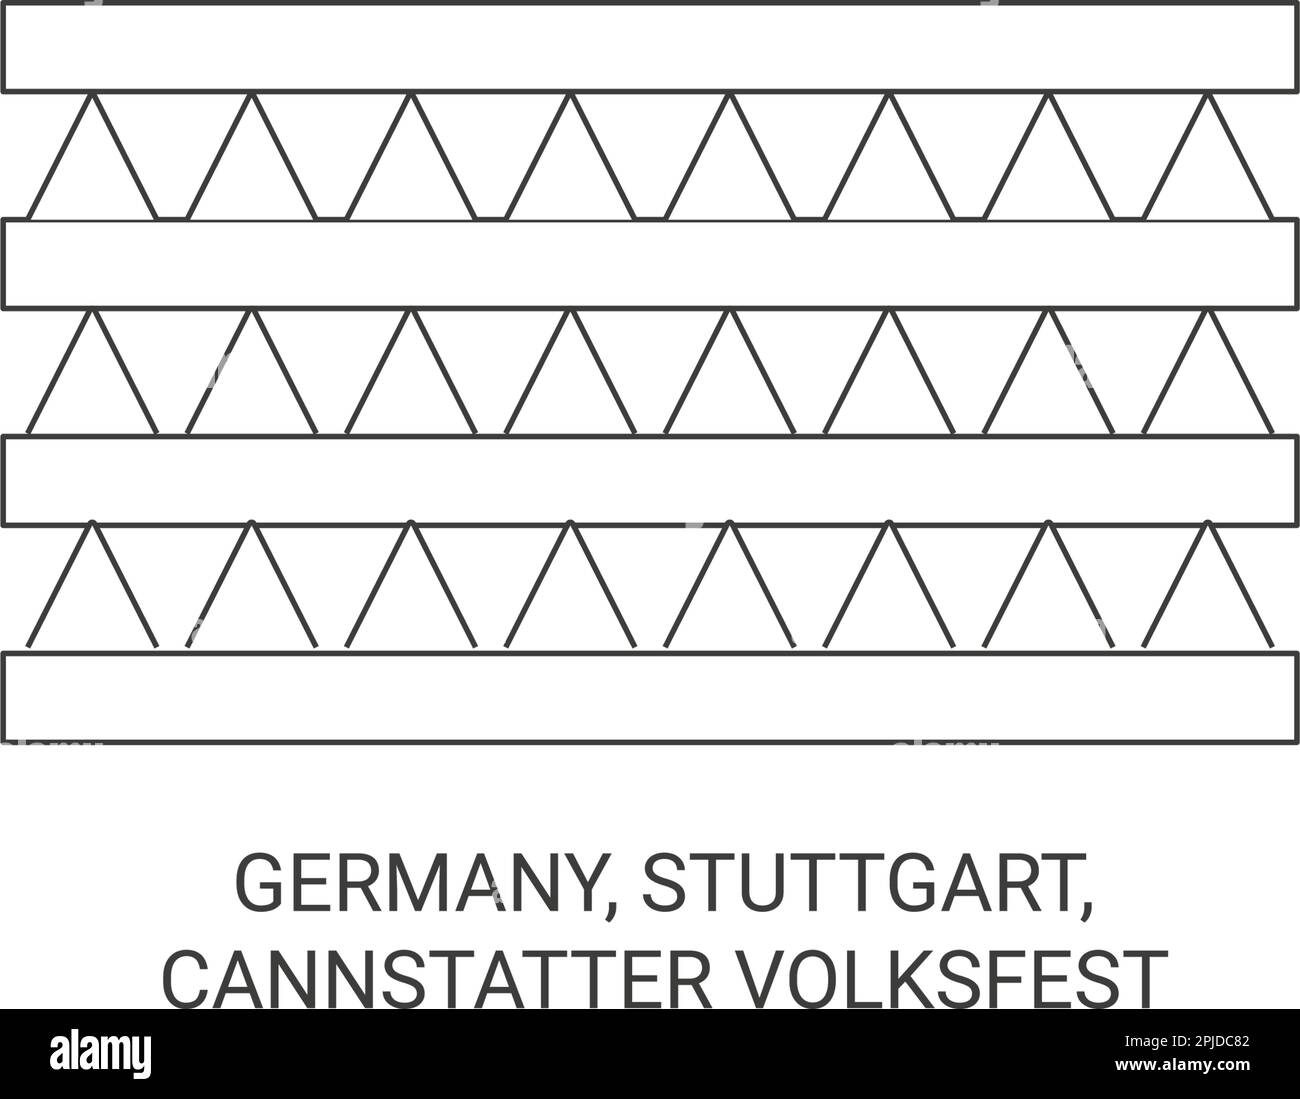 Germany, Stuttgart, Cannstatter Volksfest travel landmark vector illustration Stock Vector